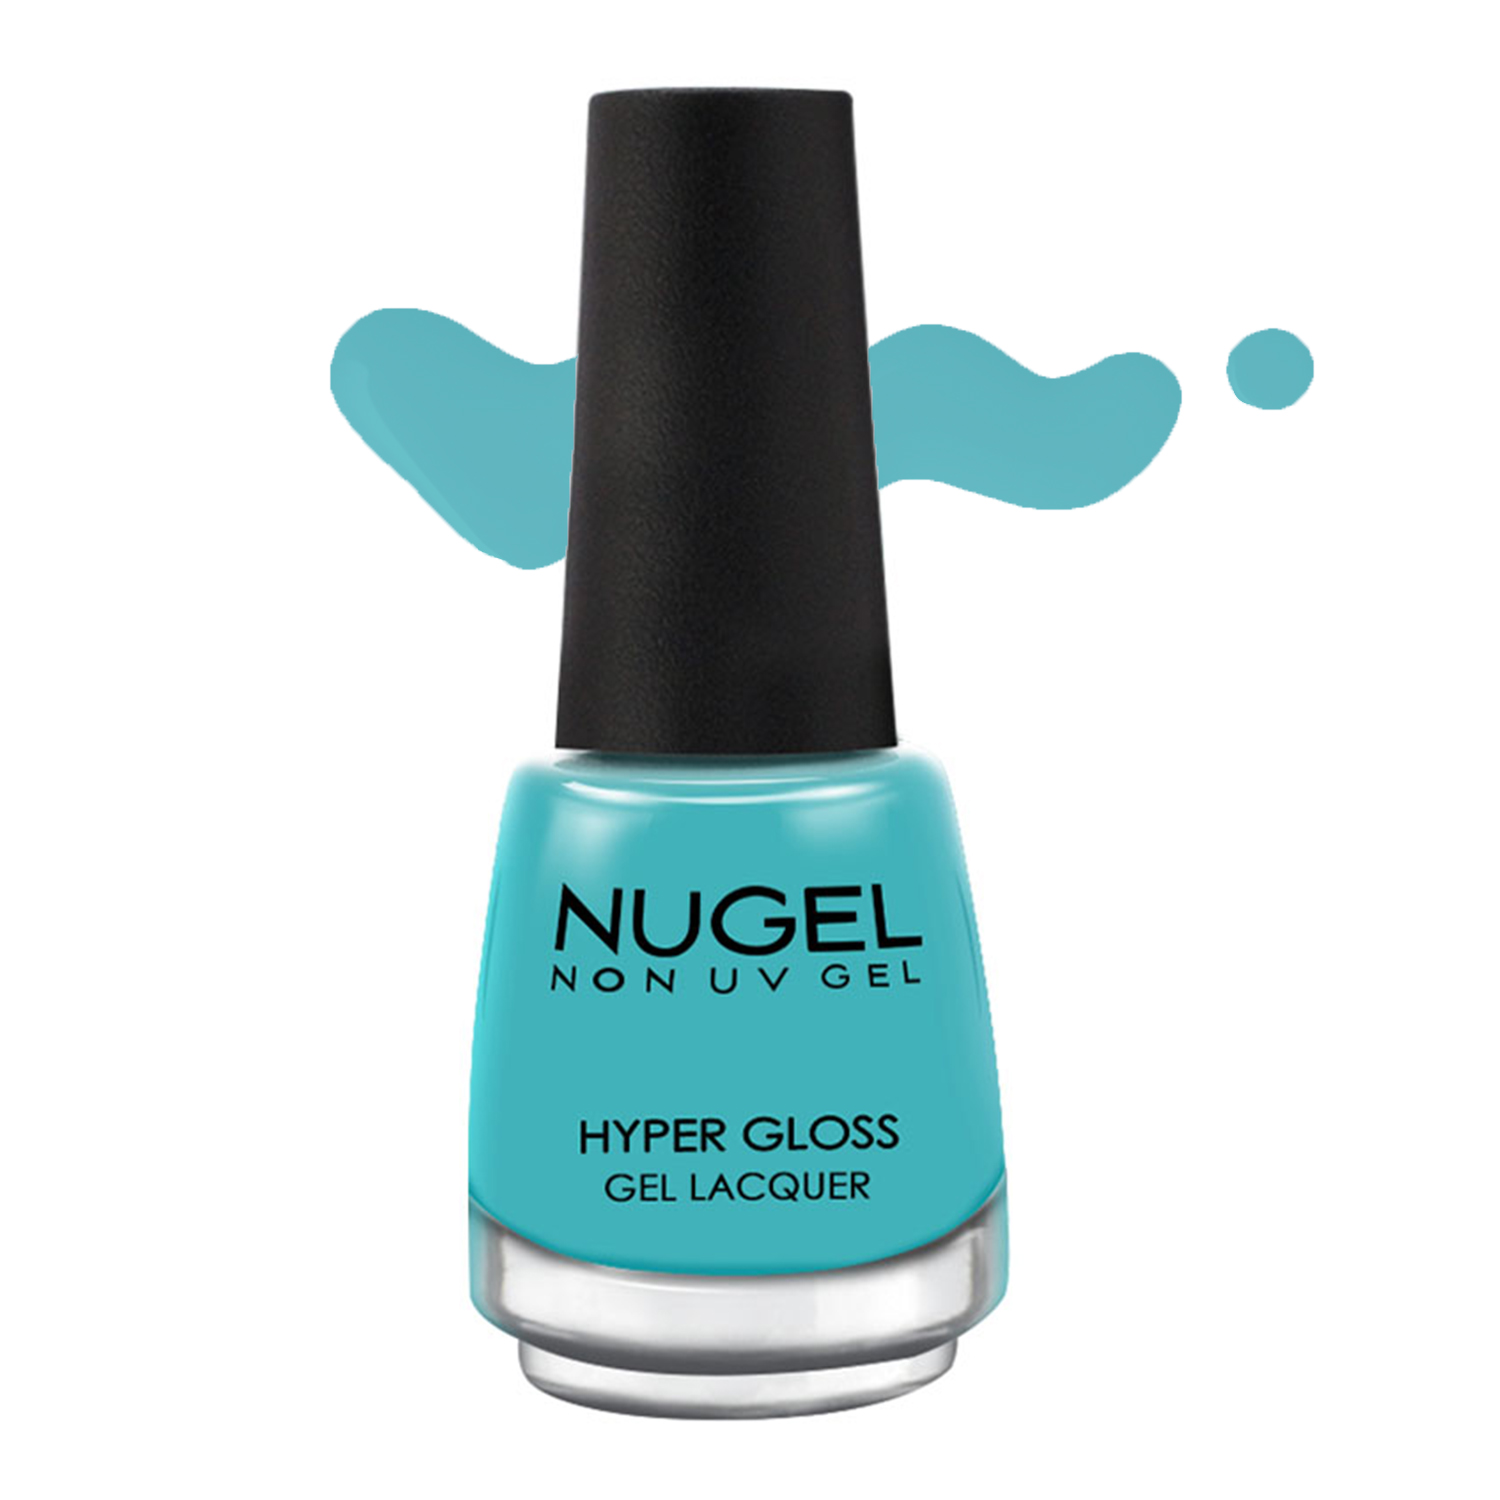 NUGEL Non UV Gel Nail Enamel, 13ml-90 - Cyan Blue